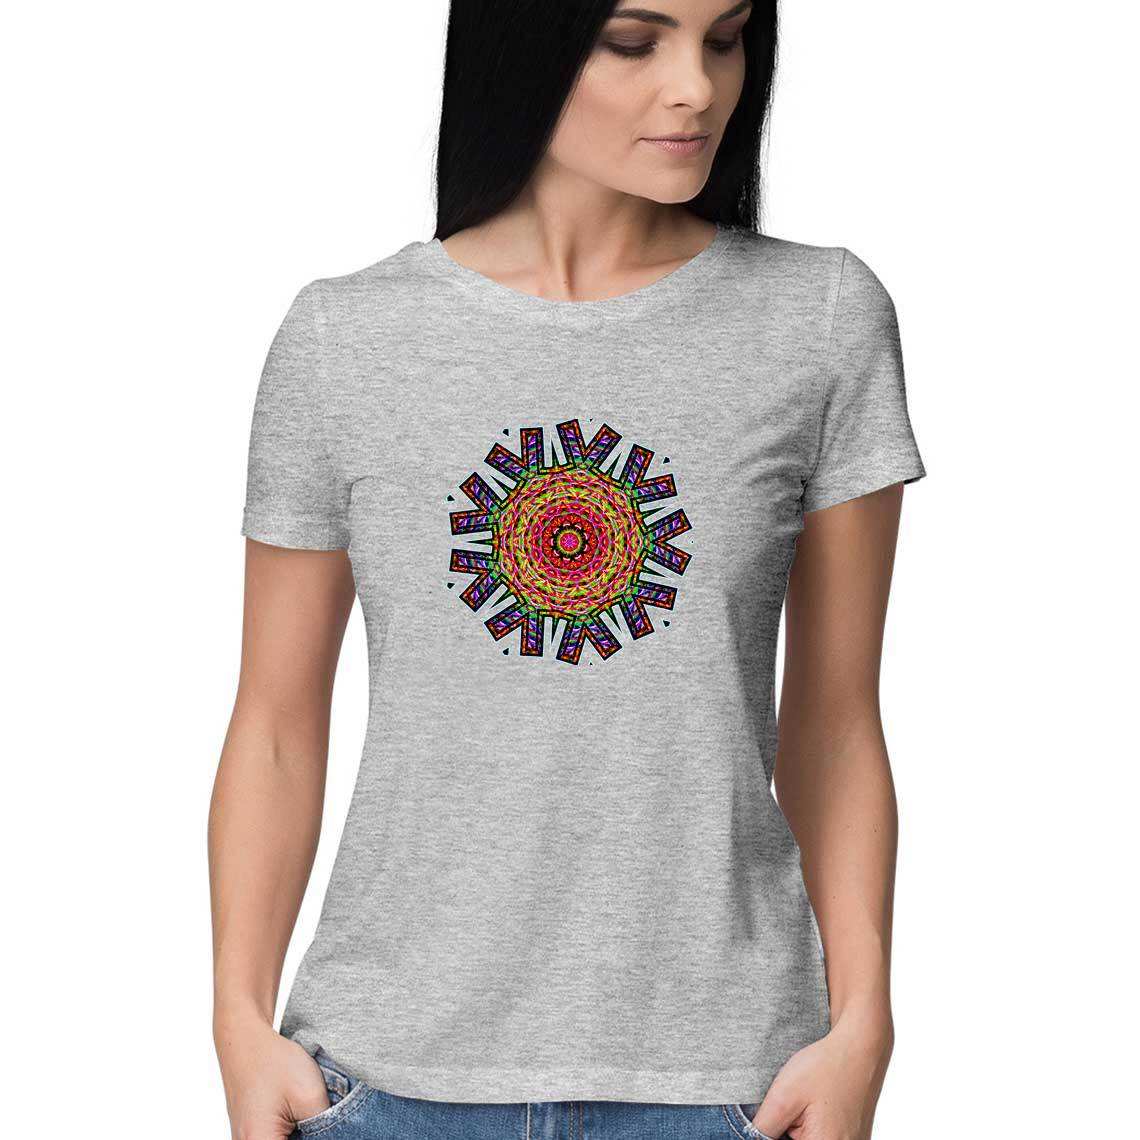 Eye of the Rambling Dragon Women's T-Shirt - CBD Store India